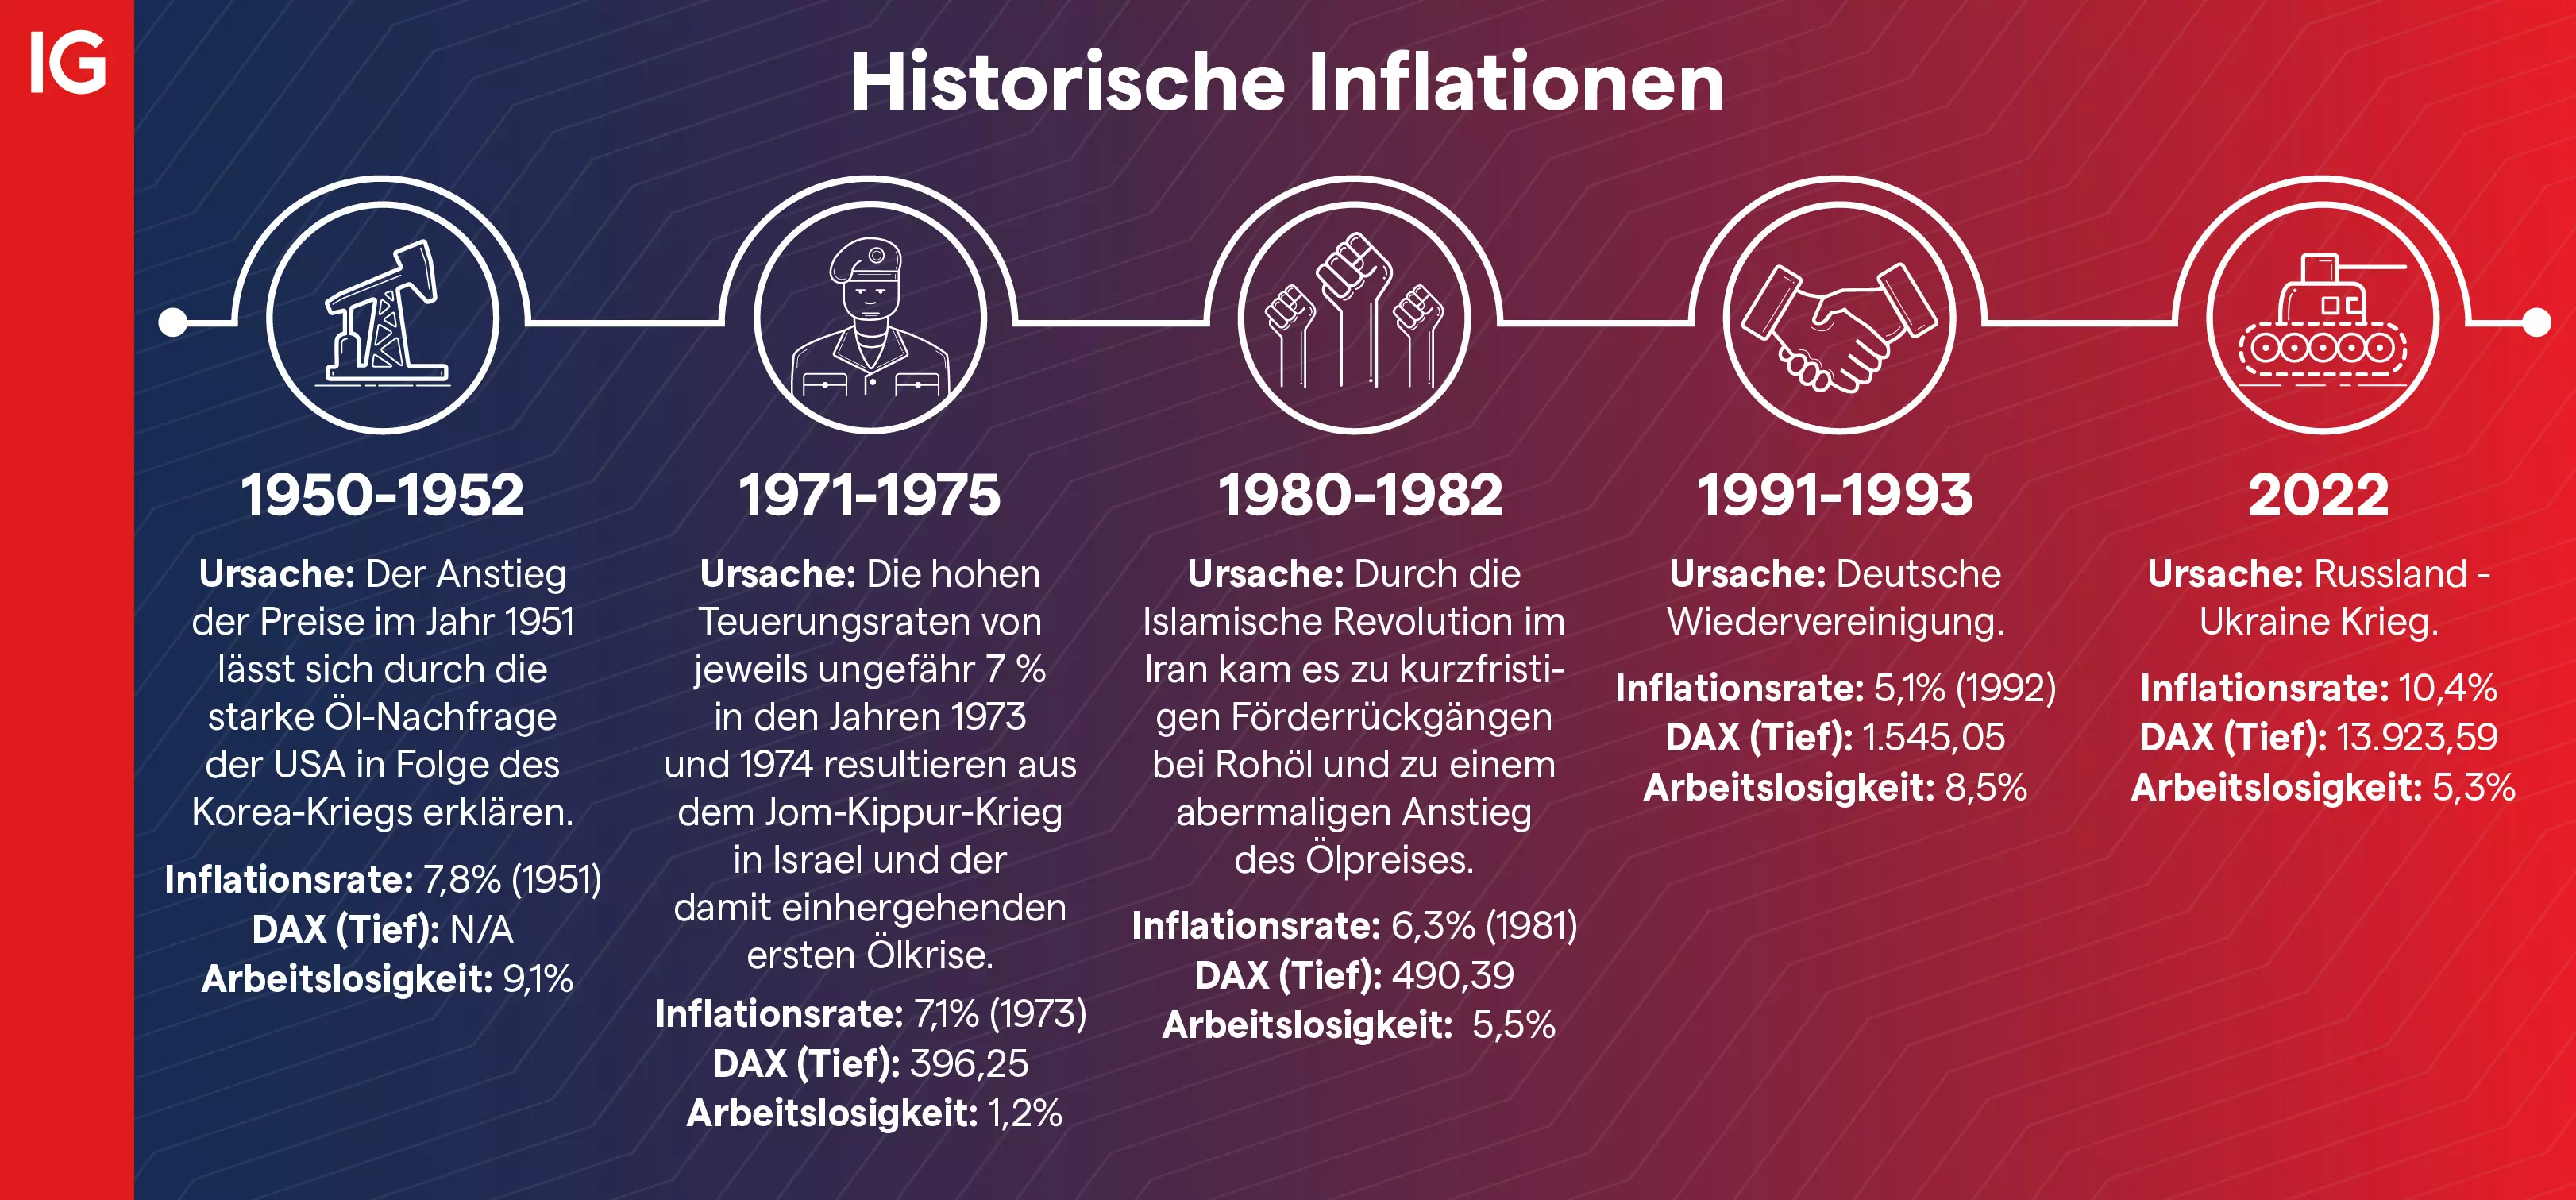 Historische Inflationen in Deutschland